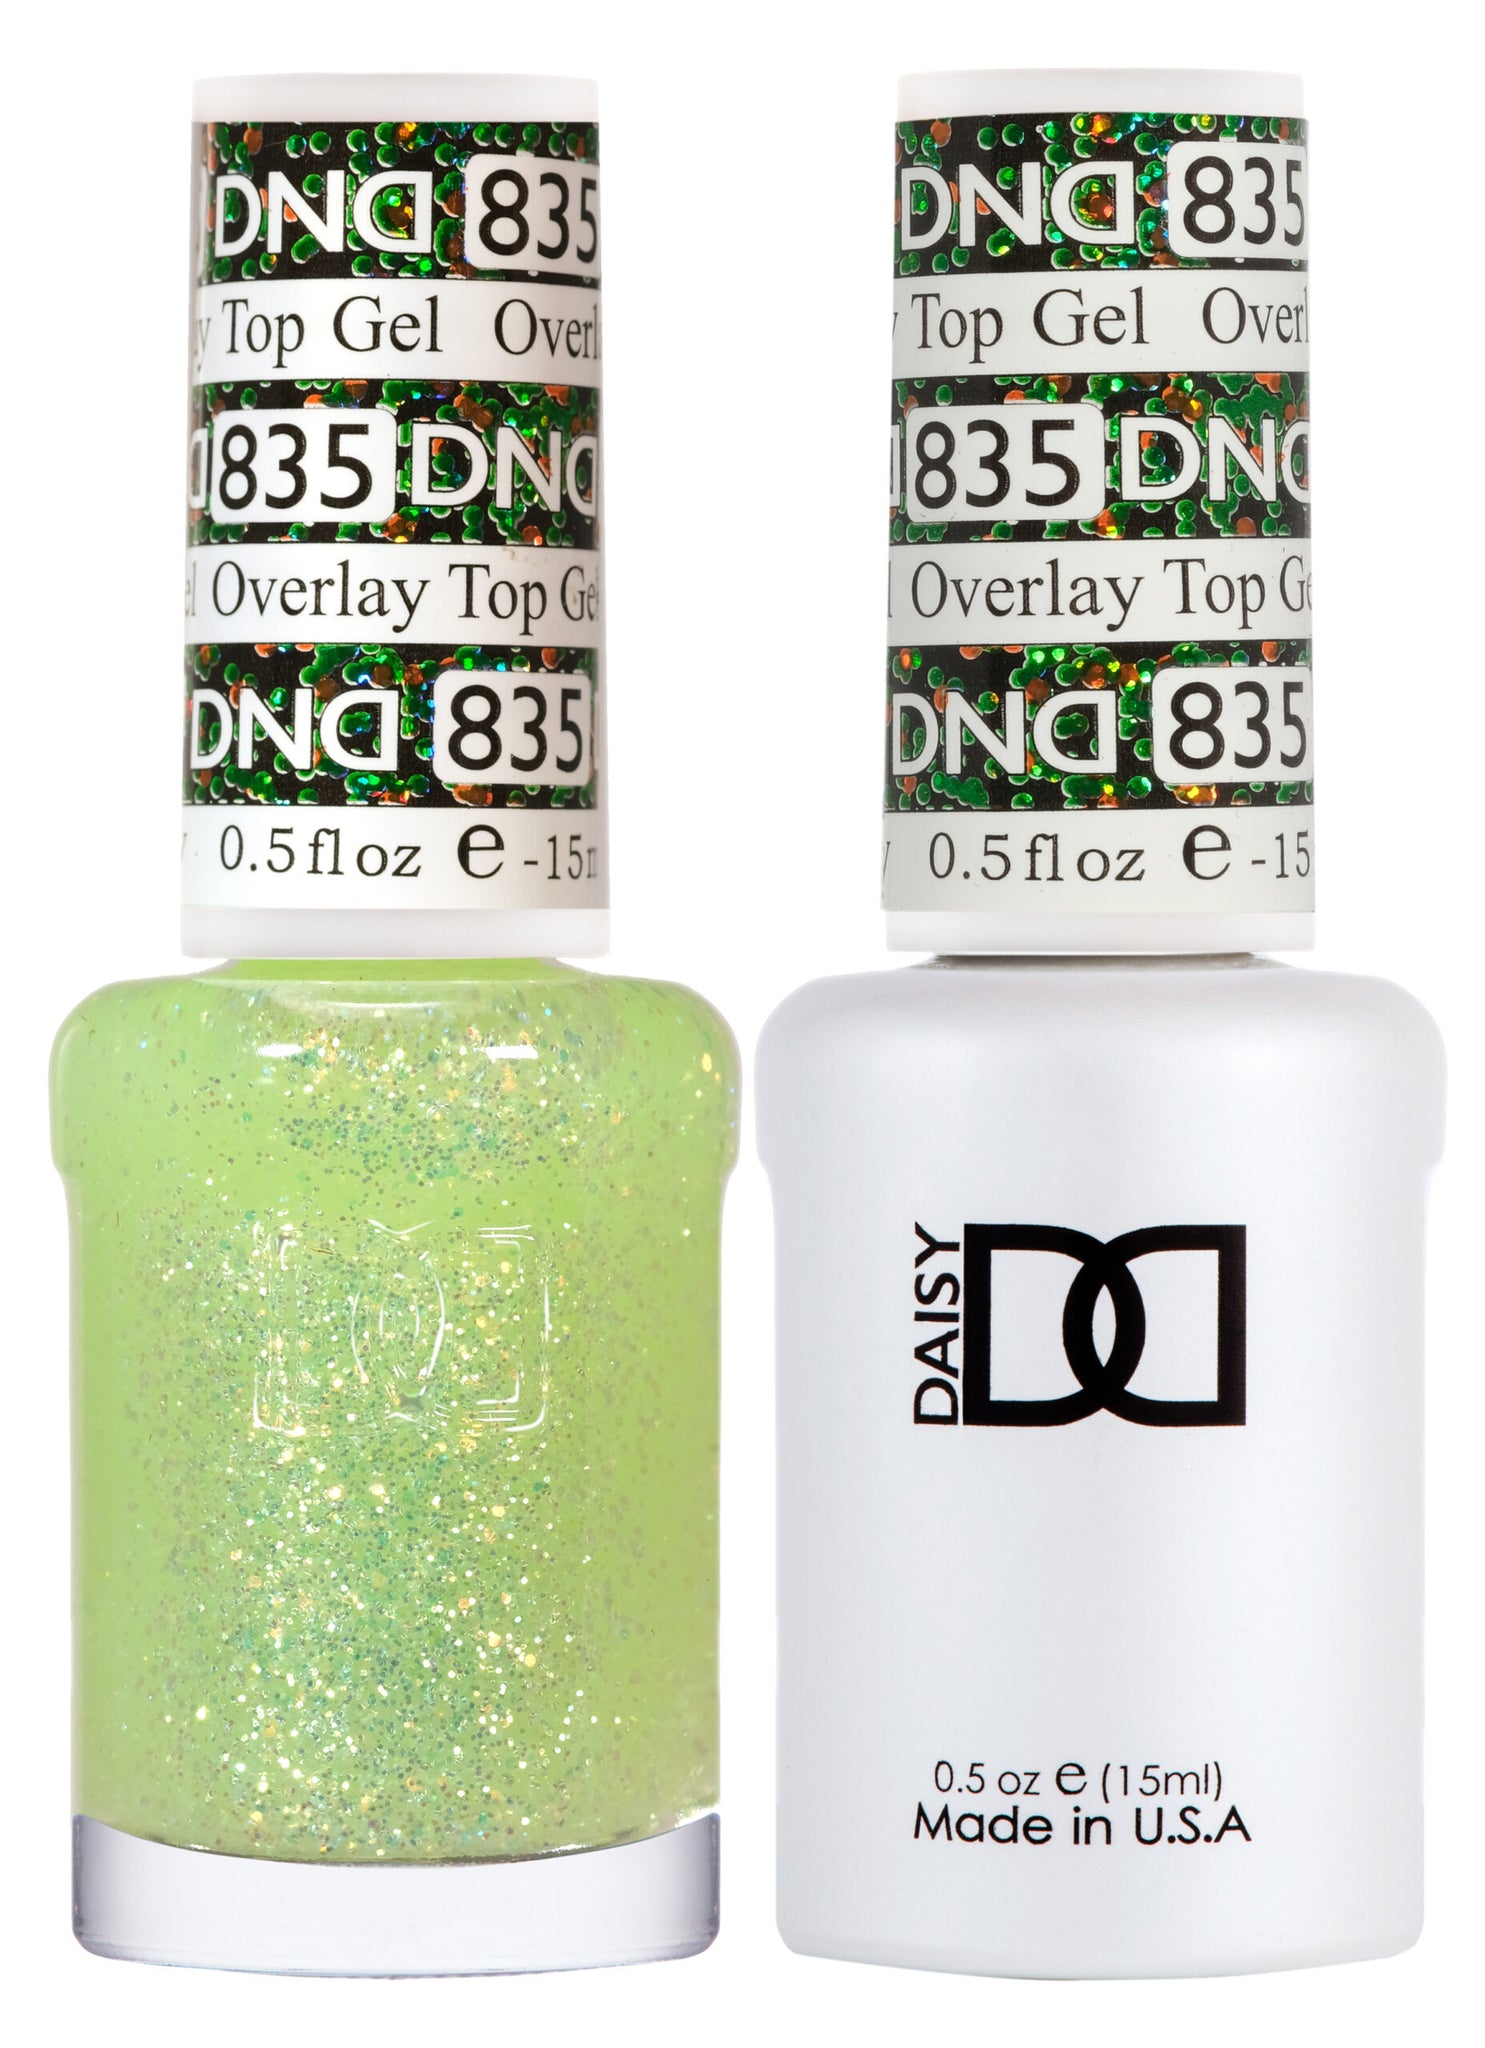 DND - Overlay Top Gel - Duo - #835